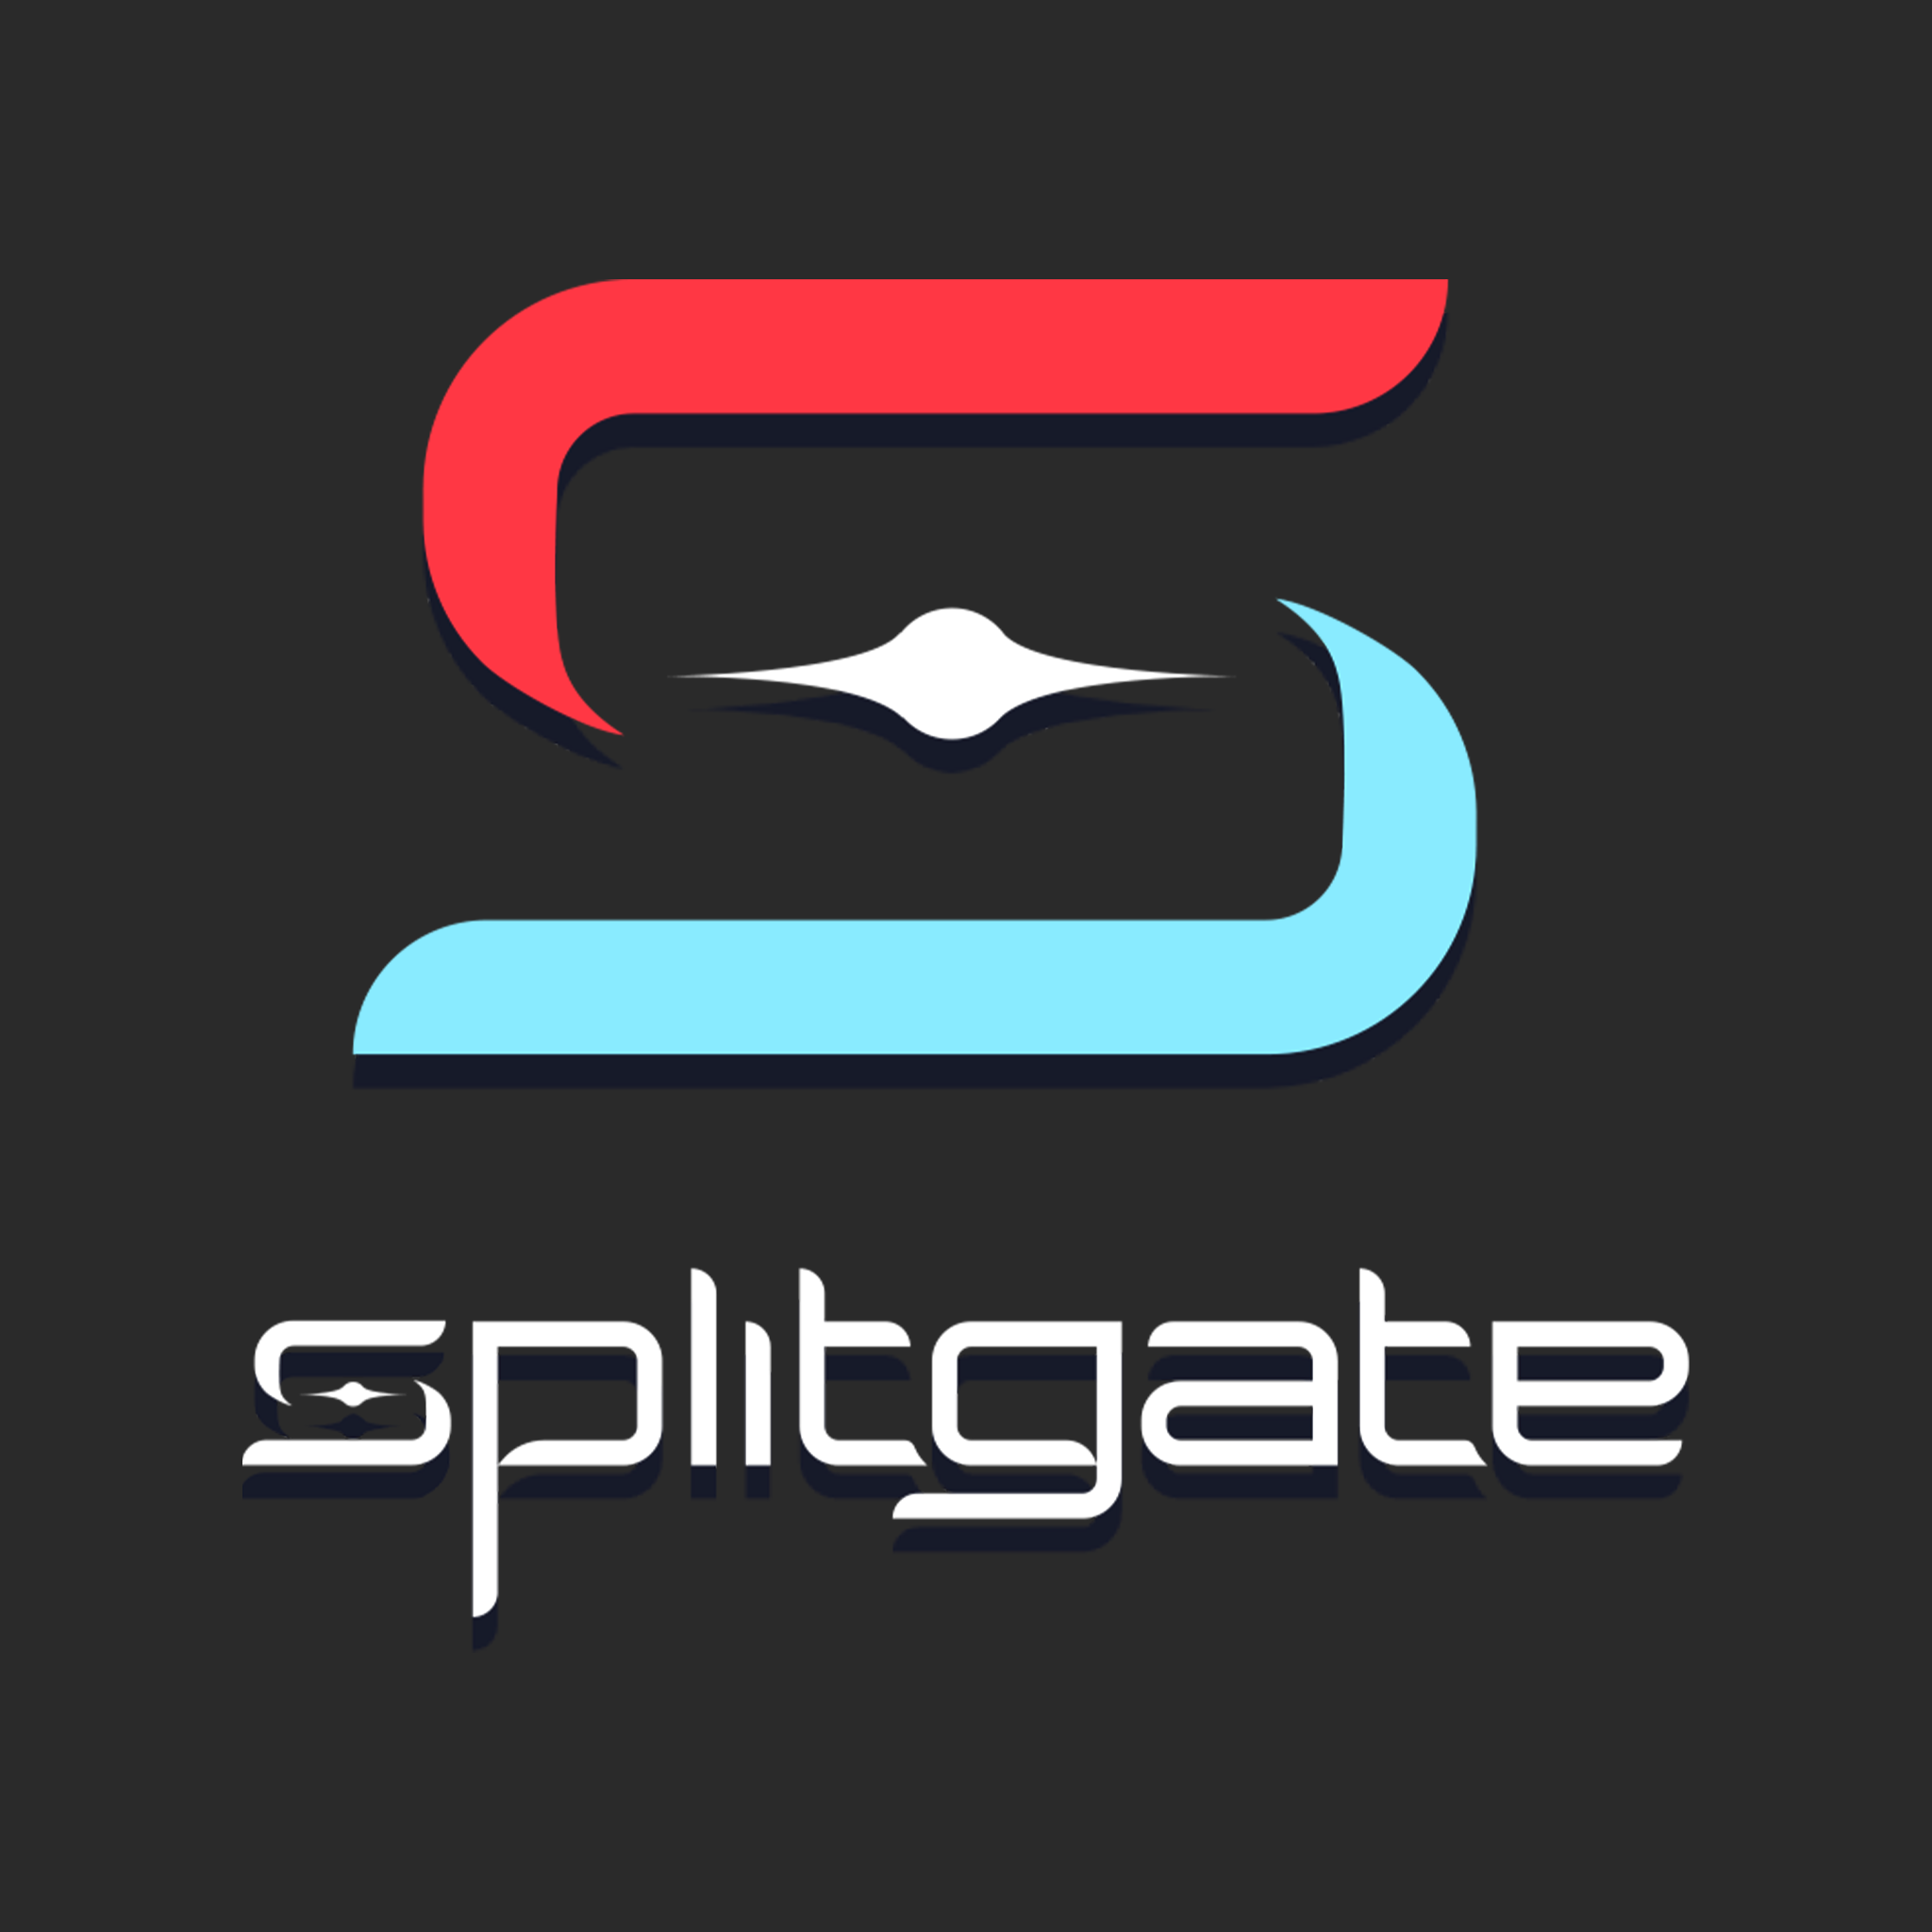 Splitgate - Wikipedia